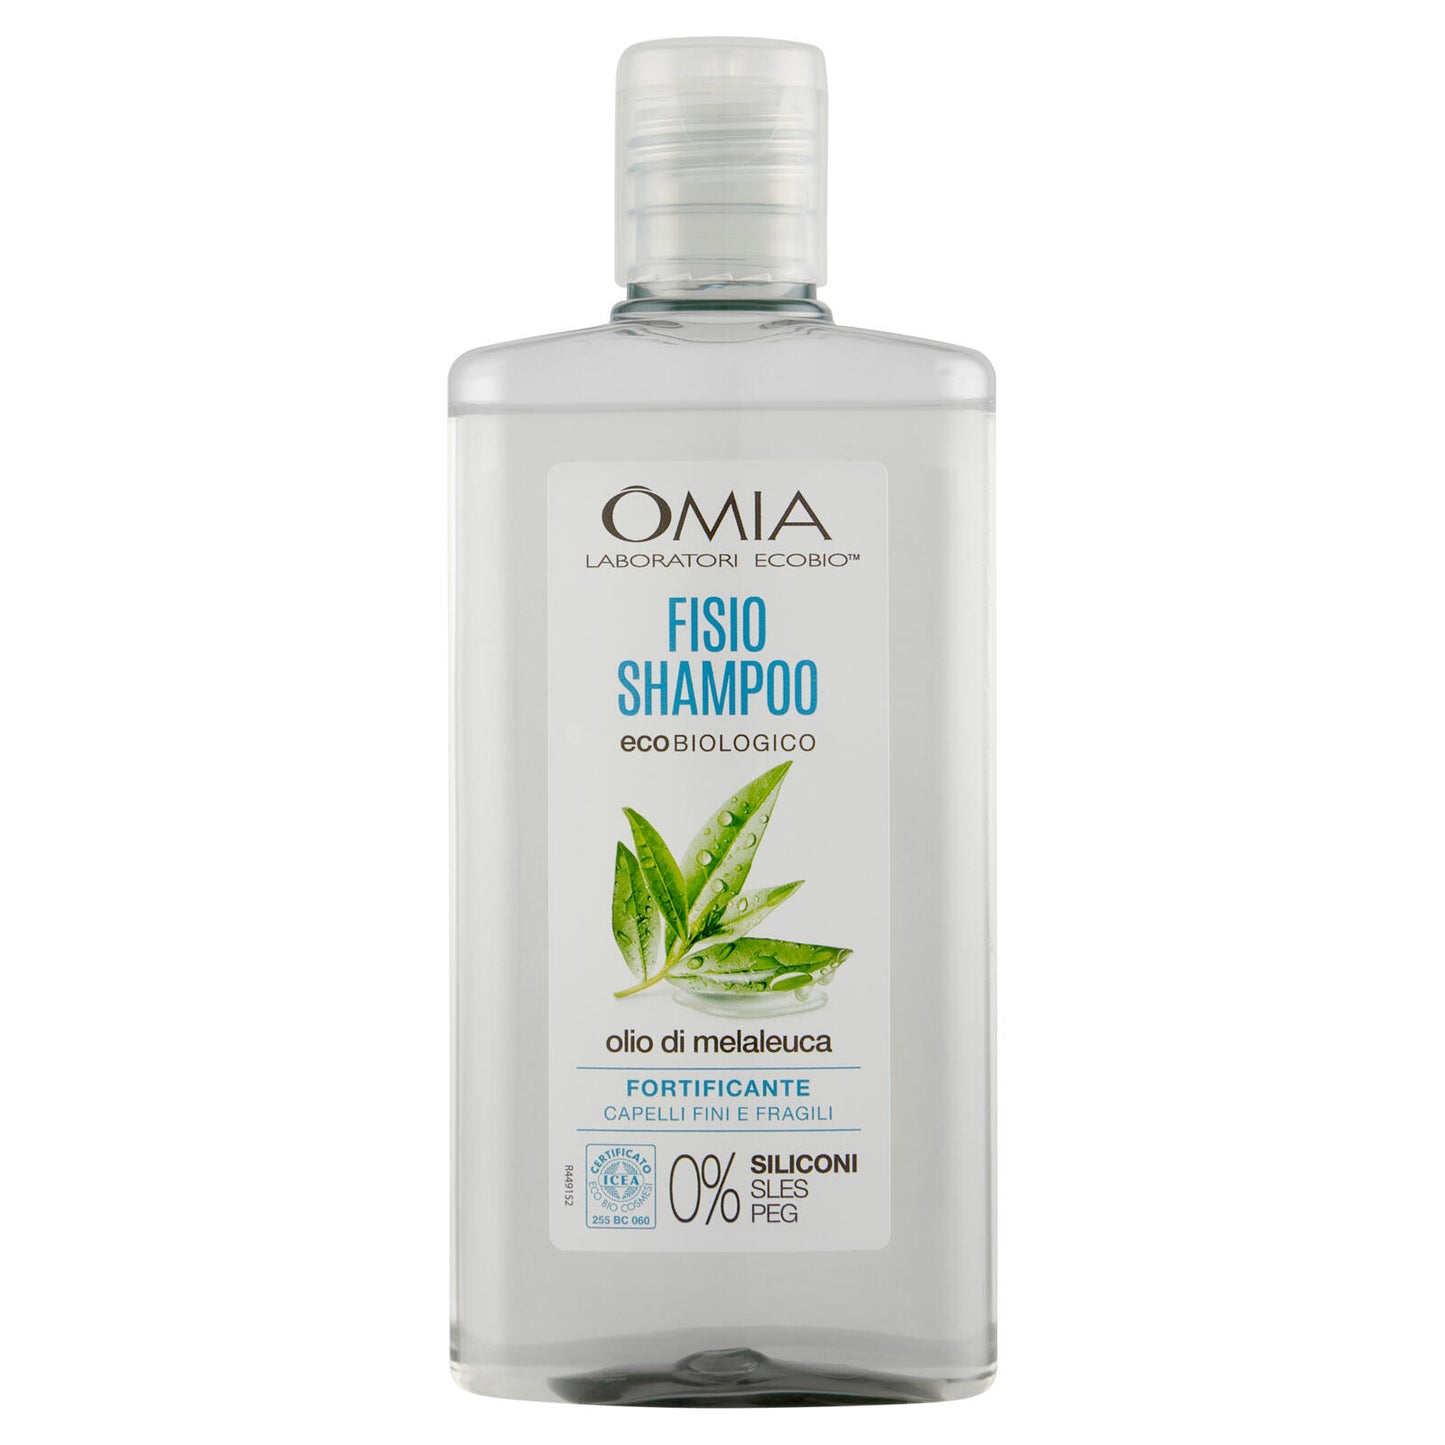 Omia Laboratori Ecobio Fisio Shampoo ecobiologico olio di melaleuca Fortificante 200 ml